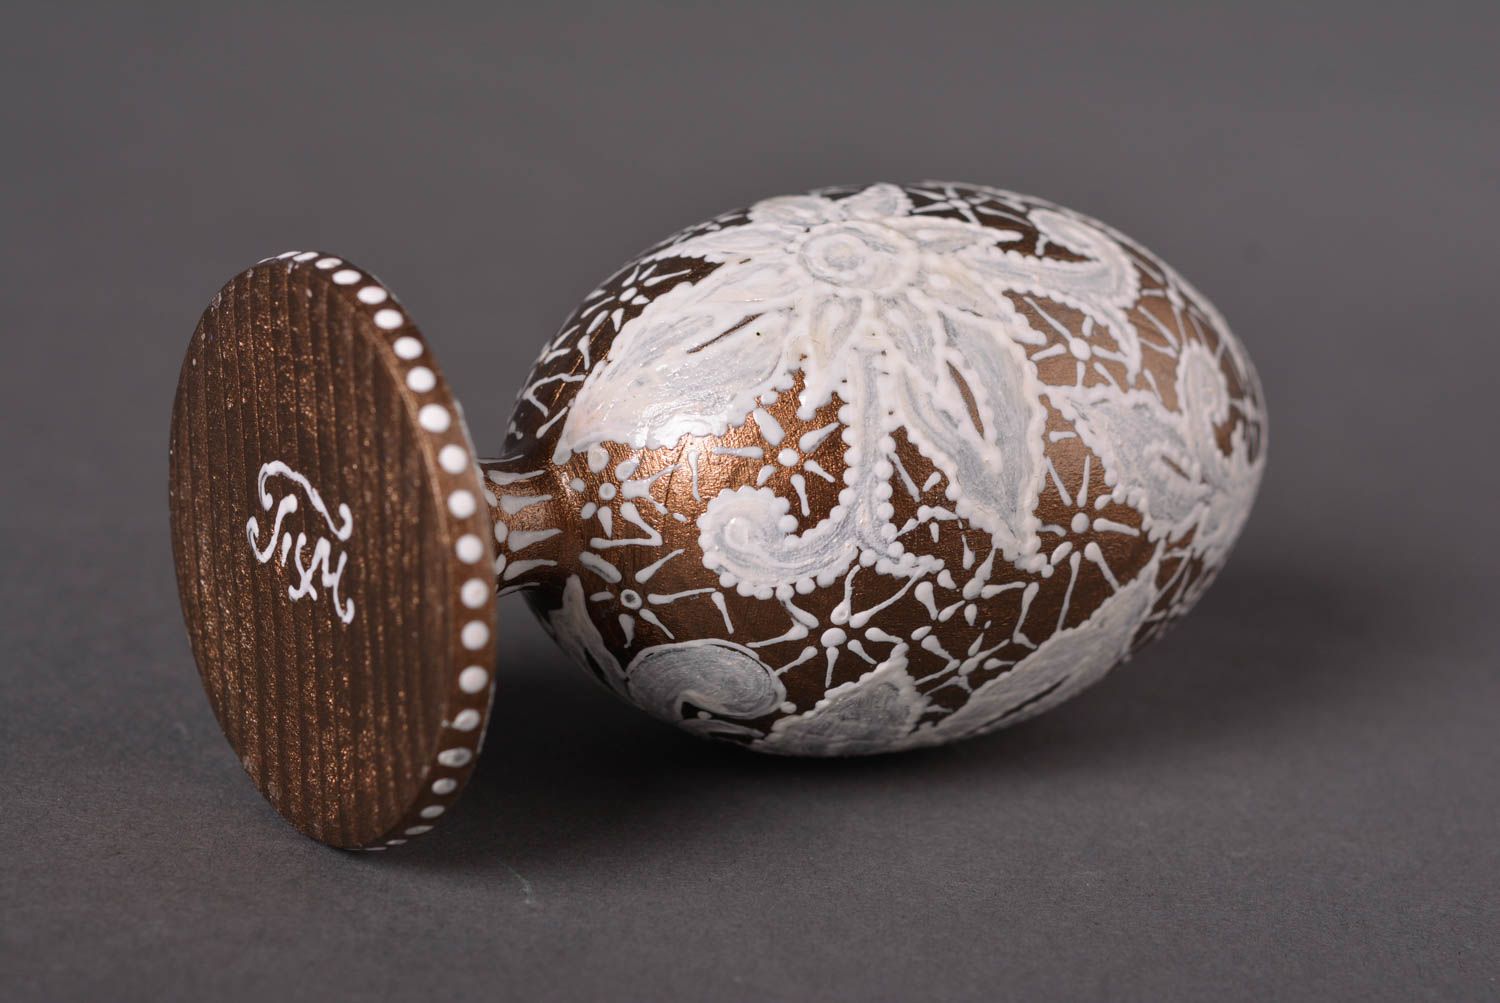 Handmade Easter Egg unusual eggs designer egg for interior decor ideas photo 2